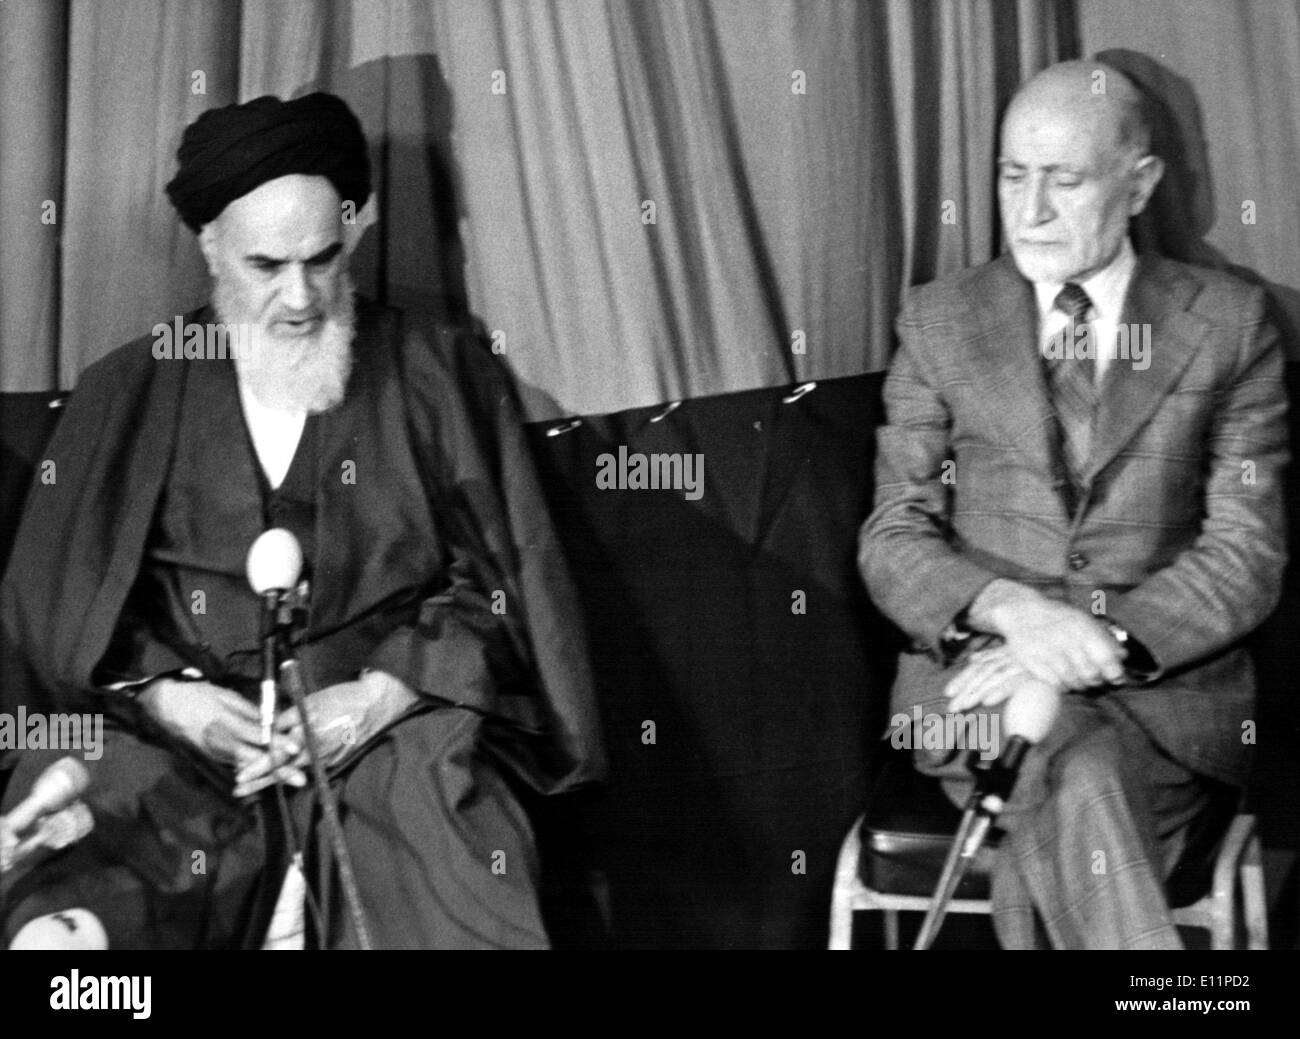 1003812 (900326) Premierminister Mehdi BAZARGAN (Rechts), Iranischer Politiker, Und beteiligt KHOMEINI, (24.09.1902 - Stockfoto